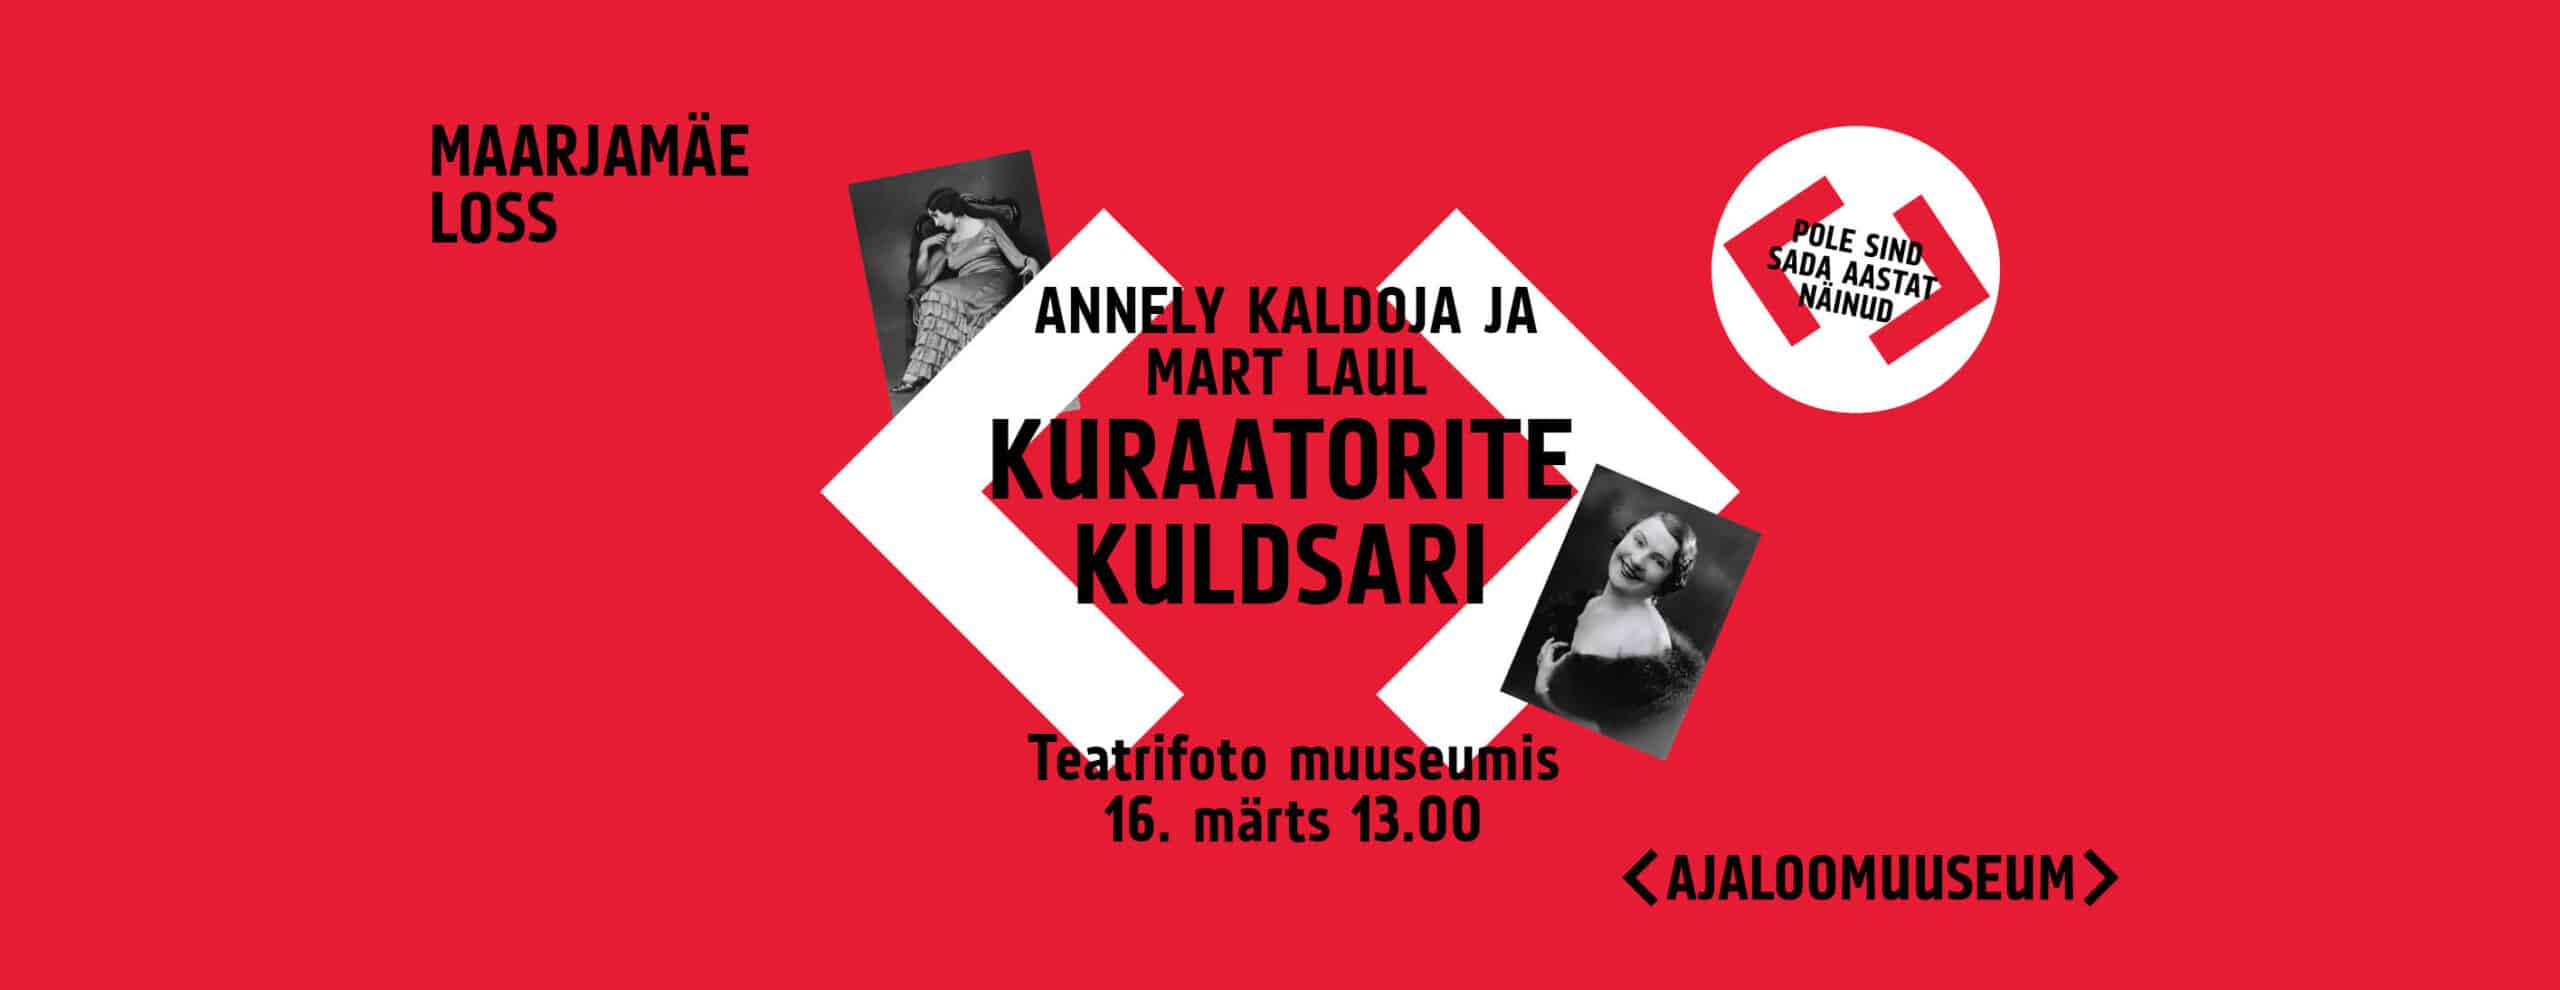 Pildil on kirjas "Maarjamäe loss / Annely Kaldoja ja Mart Laul / Kuraatorite kuldsari / Teatrifoto muuseumis / 16. märts 13.00". Pildi taust on punane, keskel kaks valget noolt ja kaks mustvalget fotot naistest. Pildi alaosas on Ajaloomuuseumi logo.